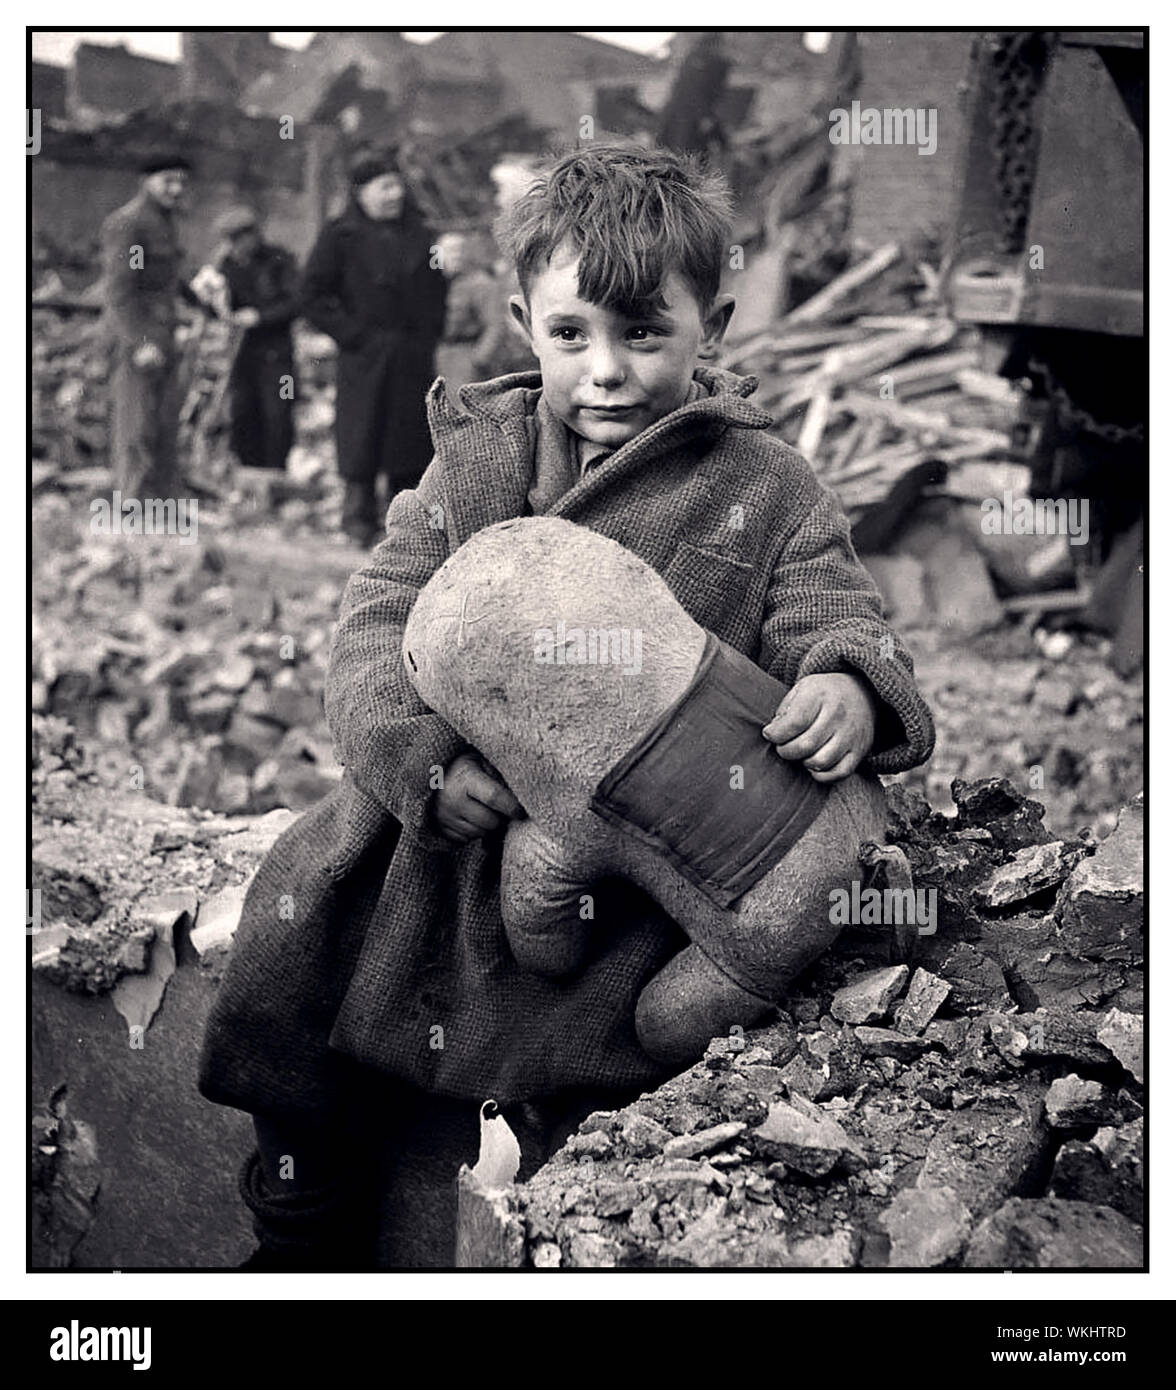 WW2 propagande britannique de droit d'un timide garçon tenant un animal en peluche au milieu de ruines après un bombardement aérien allemand de Londres, 1940 Banque D'Images